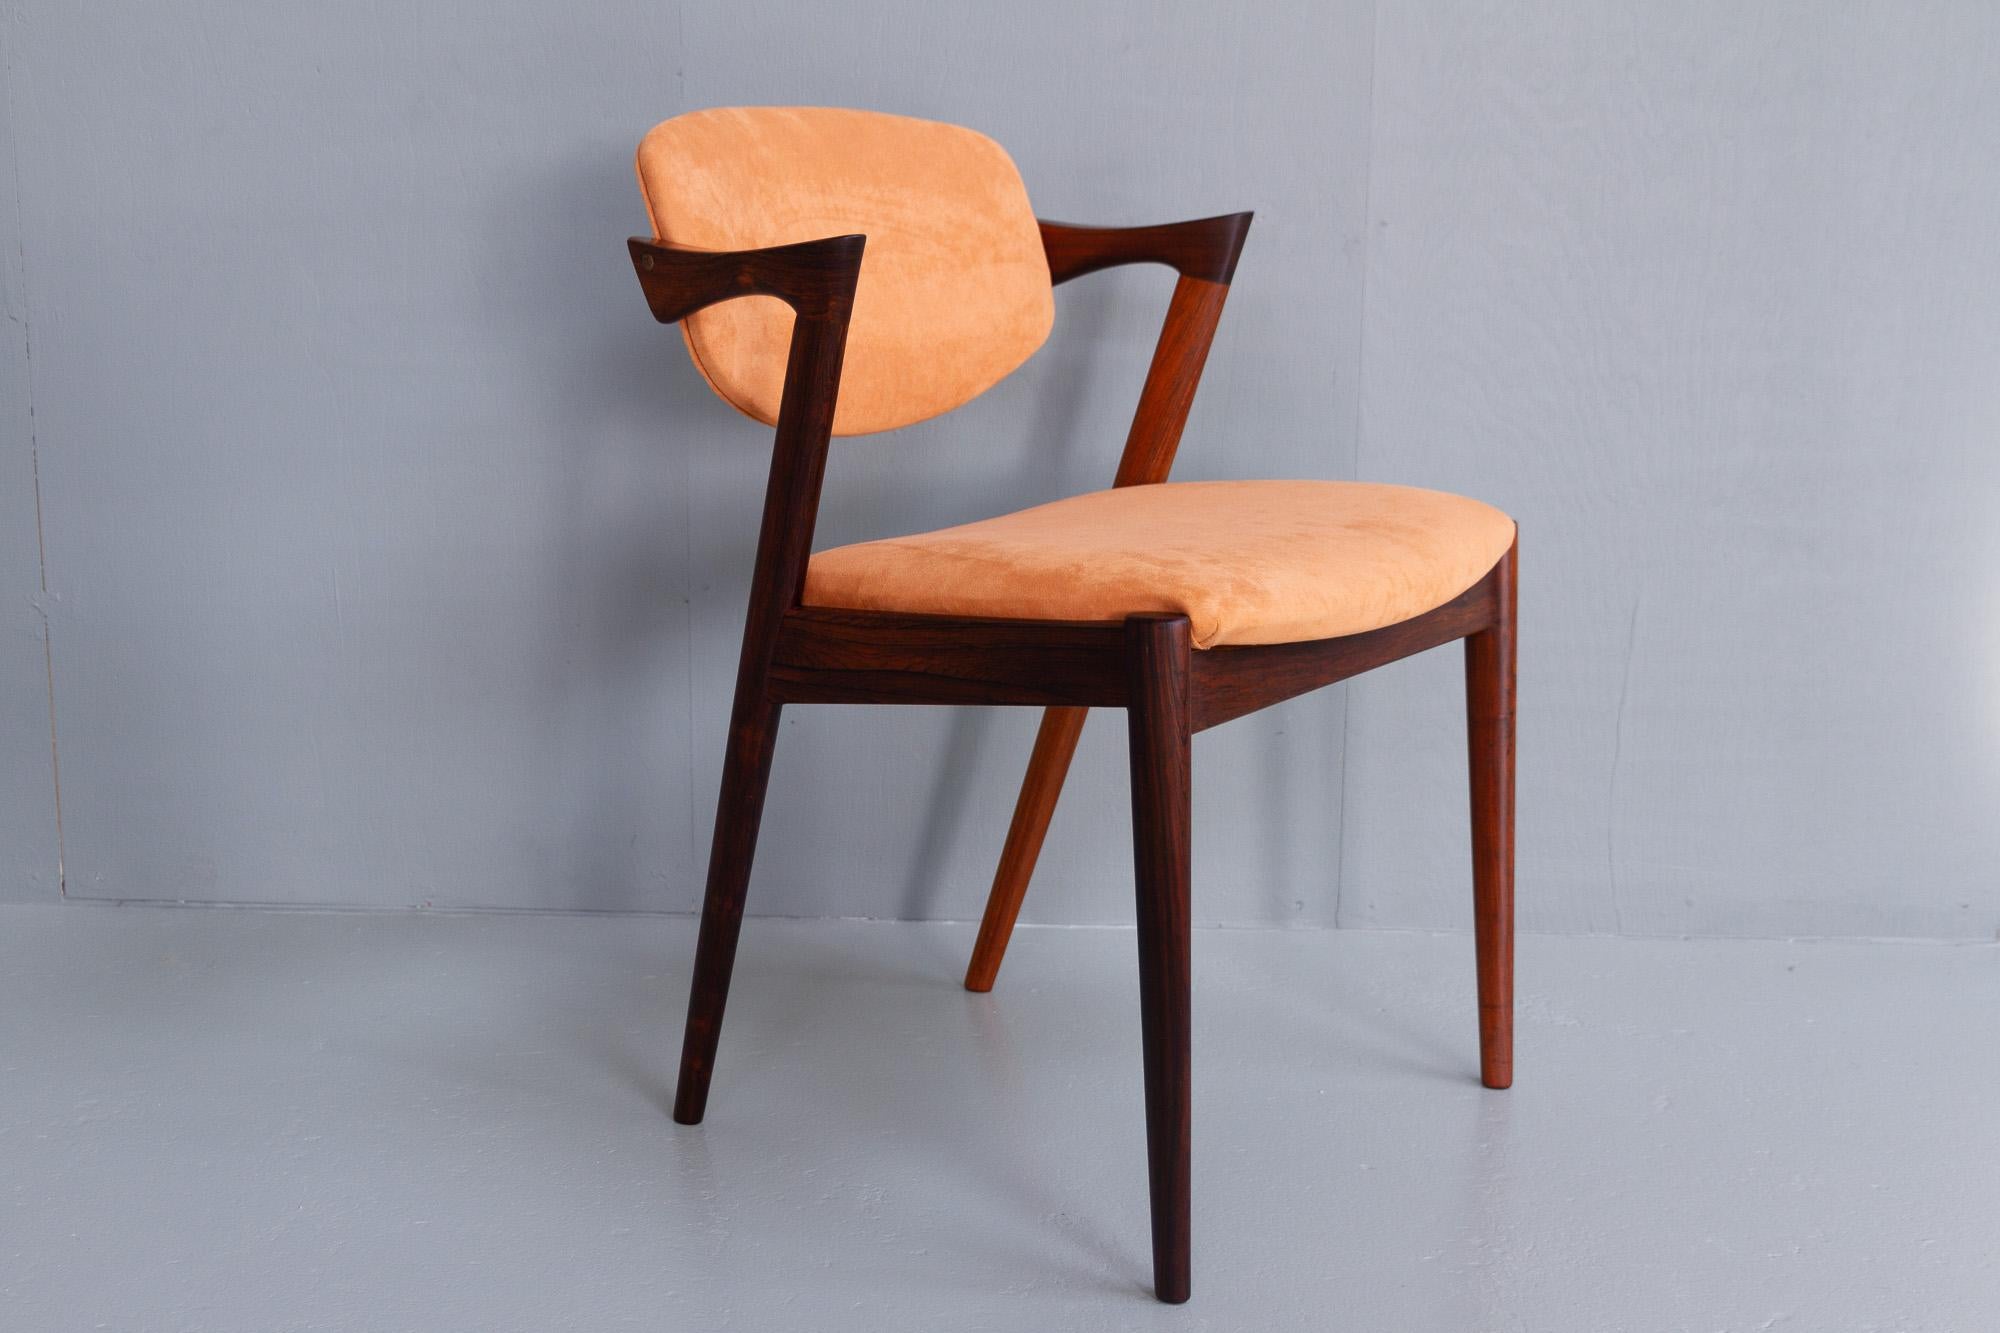 Vintage Danish Modern Rosewood chair Model 42 by Kai Kristiansen, 1960s.
Fauteuil Mid-Century Modern conçu par l'architecte danois Kai Kristiansen dans les années 1950 et fabriqué par Schou Andersen Møbelfabrik, Danemark.
Très confortable, d'un